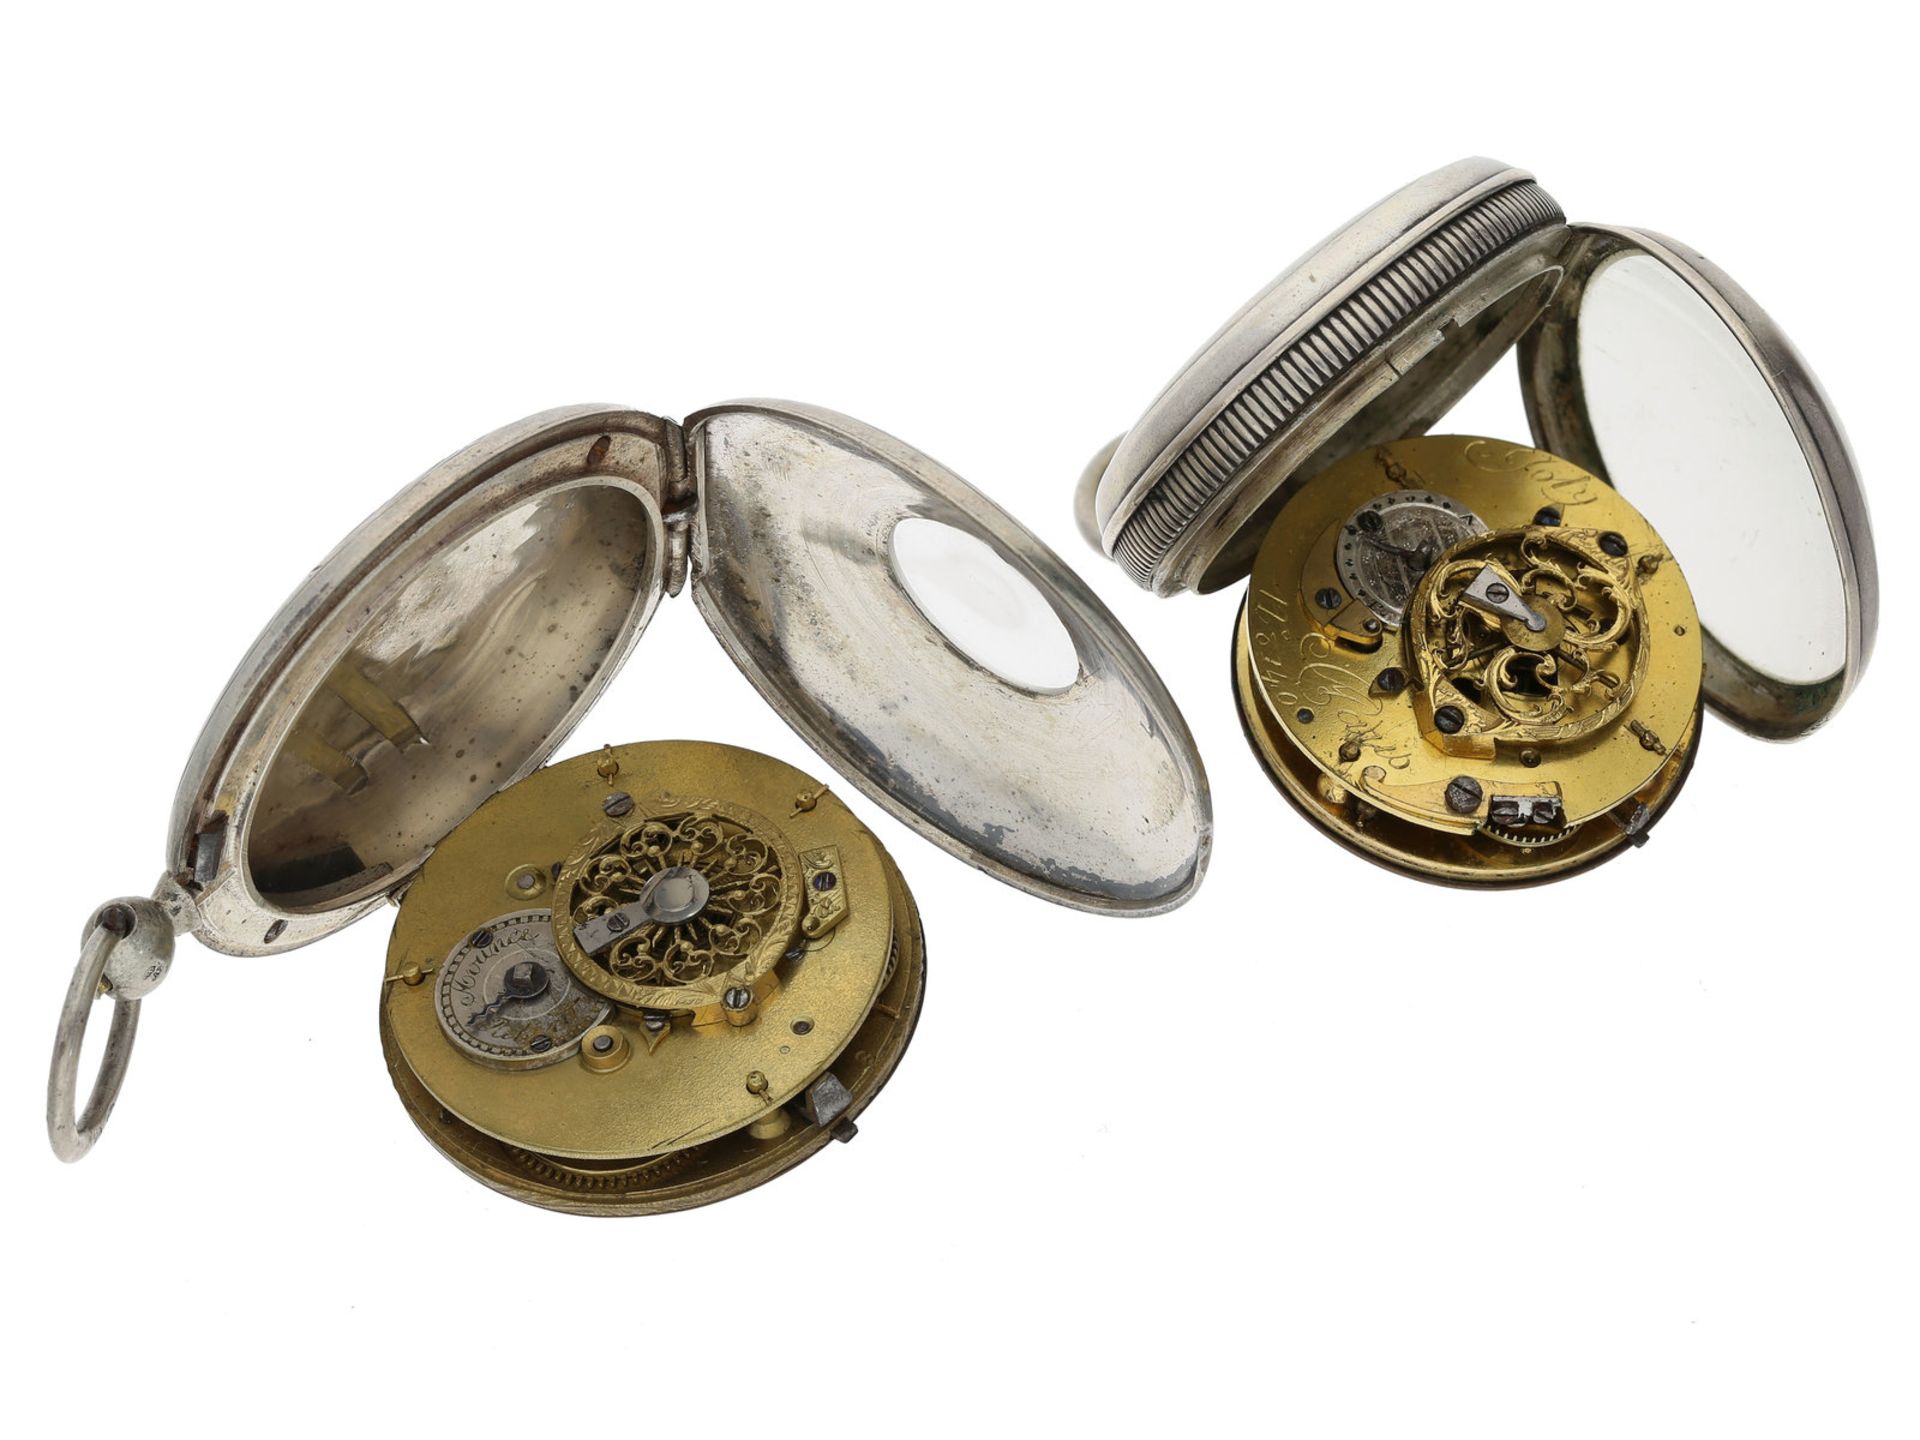 Taschenuhr: 2 silberne Spindeluhren, um 1800 - Bild 2 aus 2